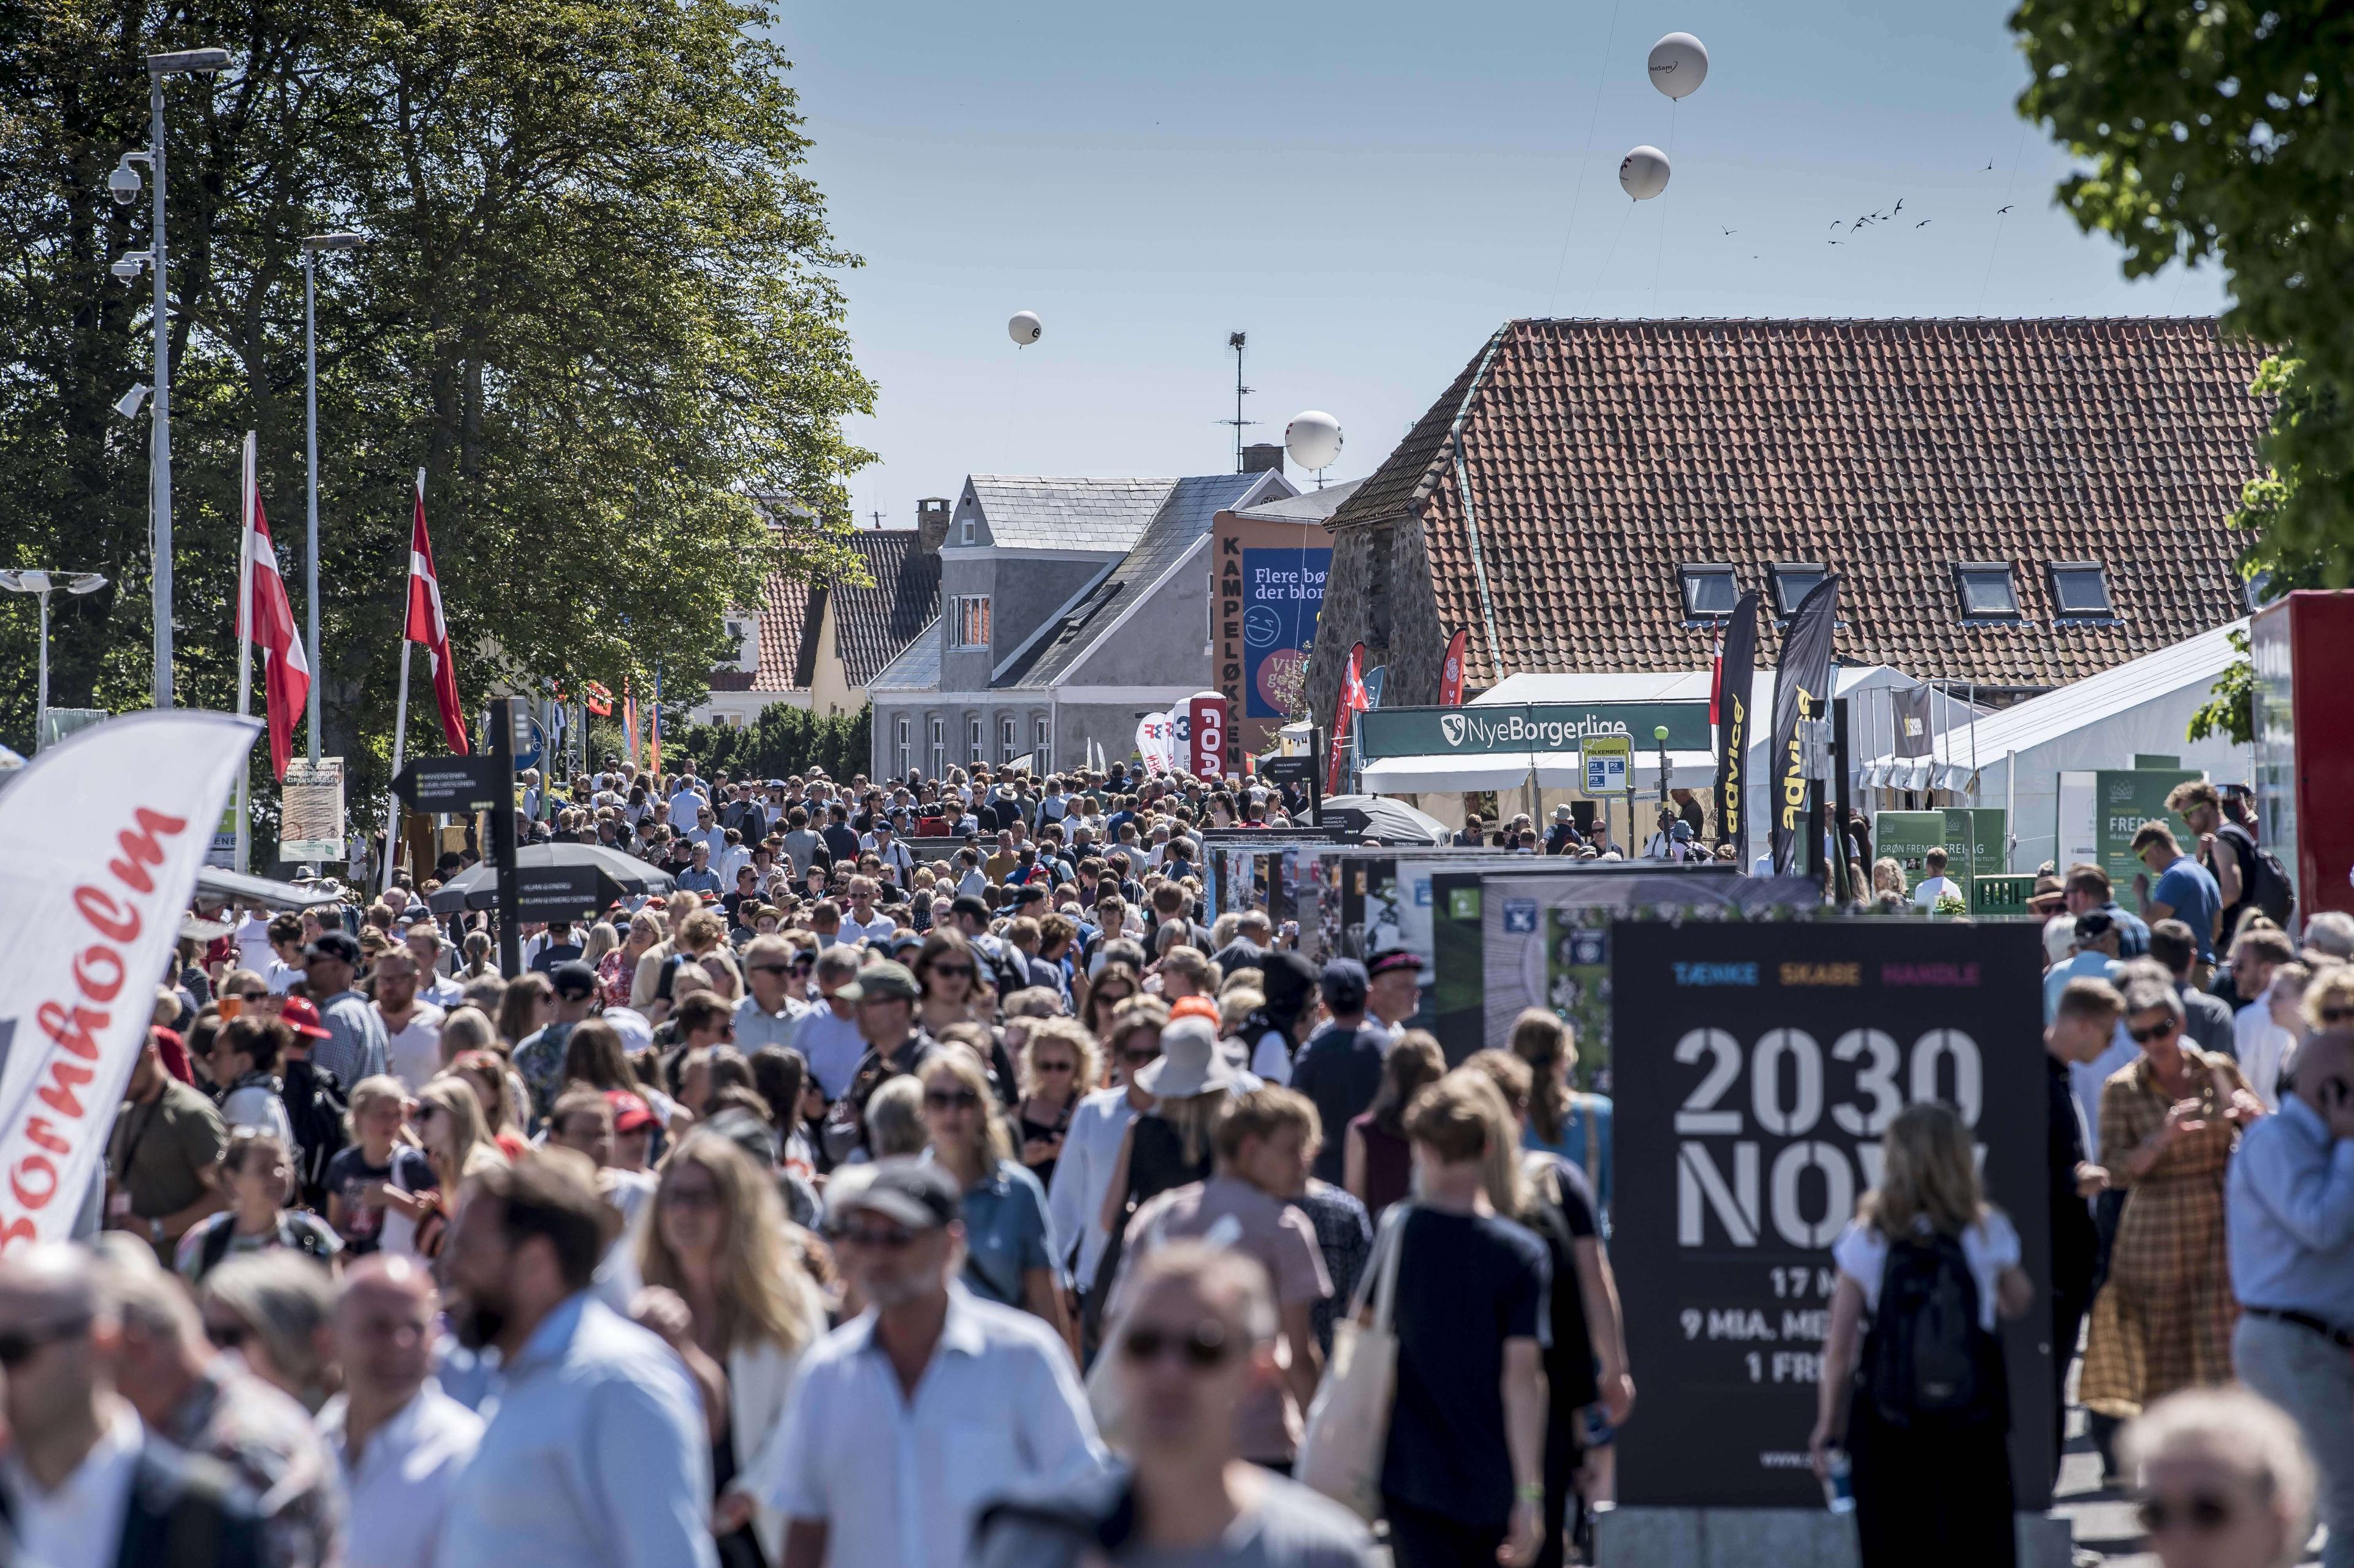 Der er normalt tæt pakket i Allinge på Bornholm under Folkemødet. Billedet er fra 2019, hvor der var cirka 60.000 besøgende over fire dage ved den politiske festival. I år kommer der ikke så mange mennesker grundet coronarestriktioner. 